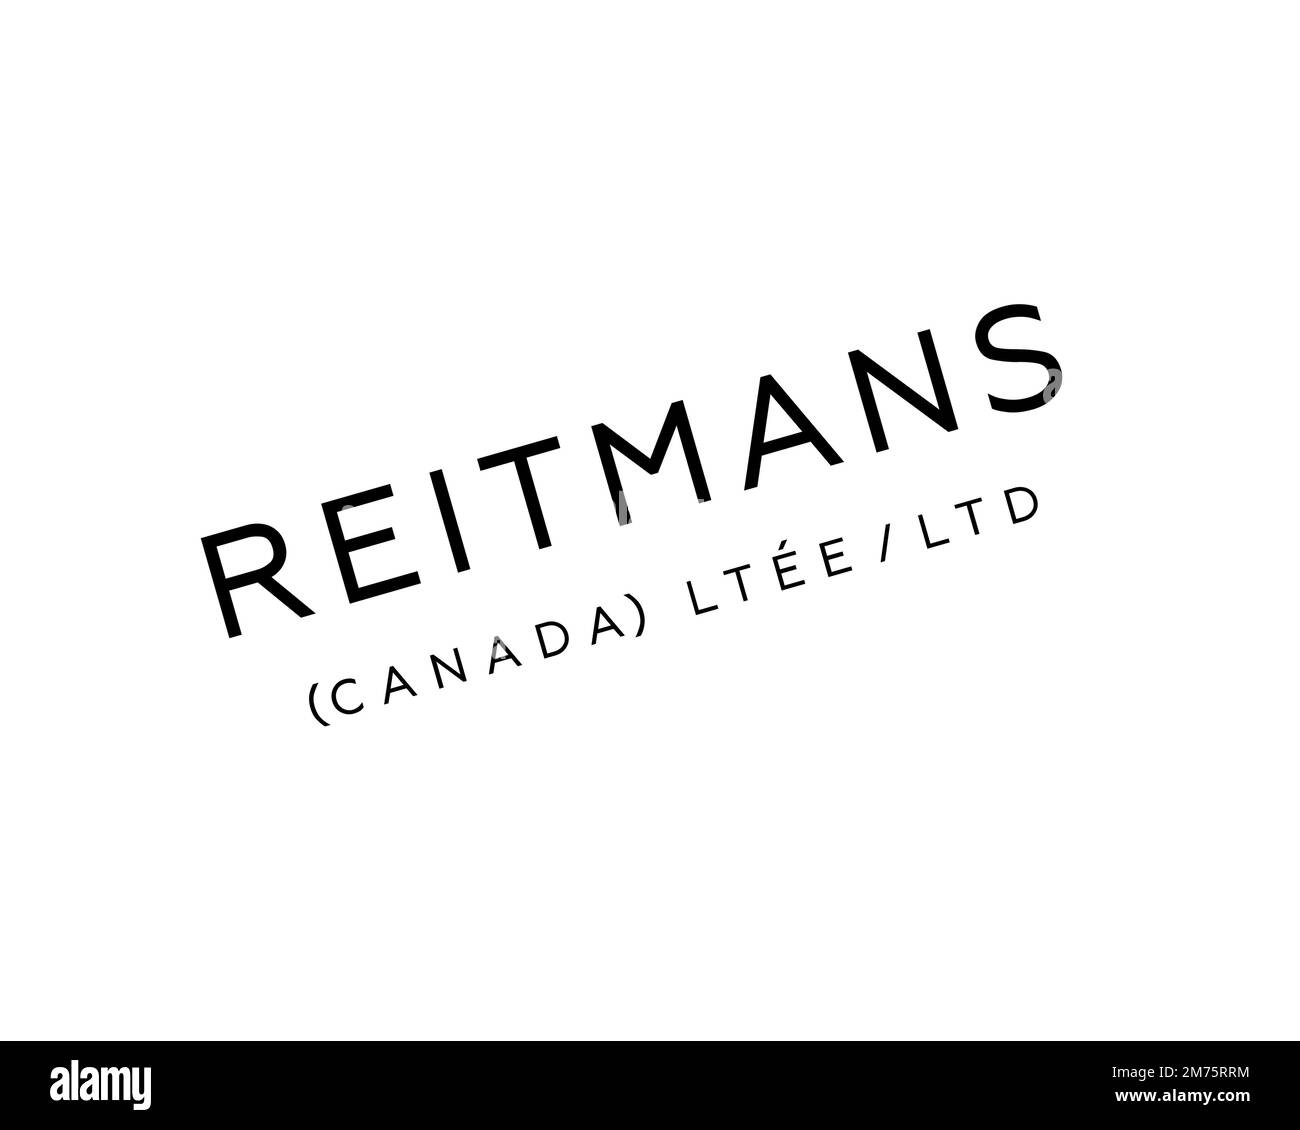 Reitmans reitmans Black and White Stock Photos & Images - Alamy